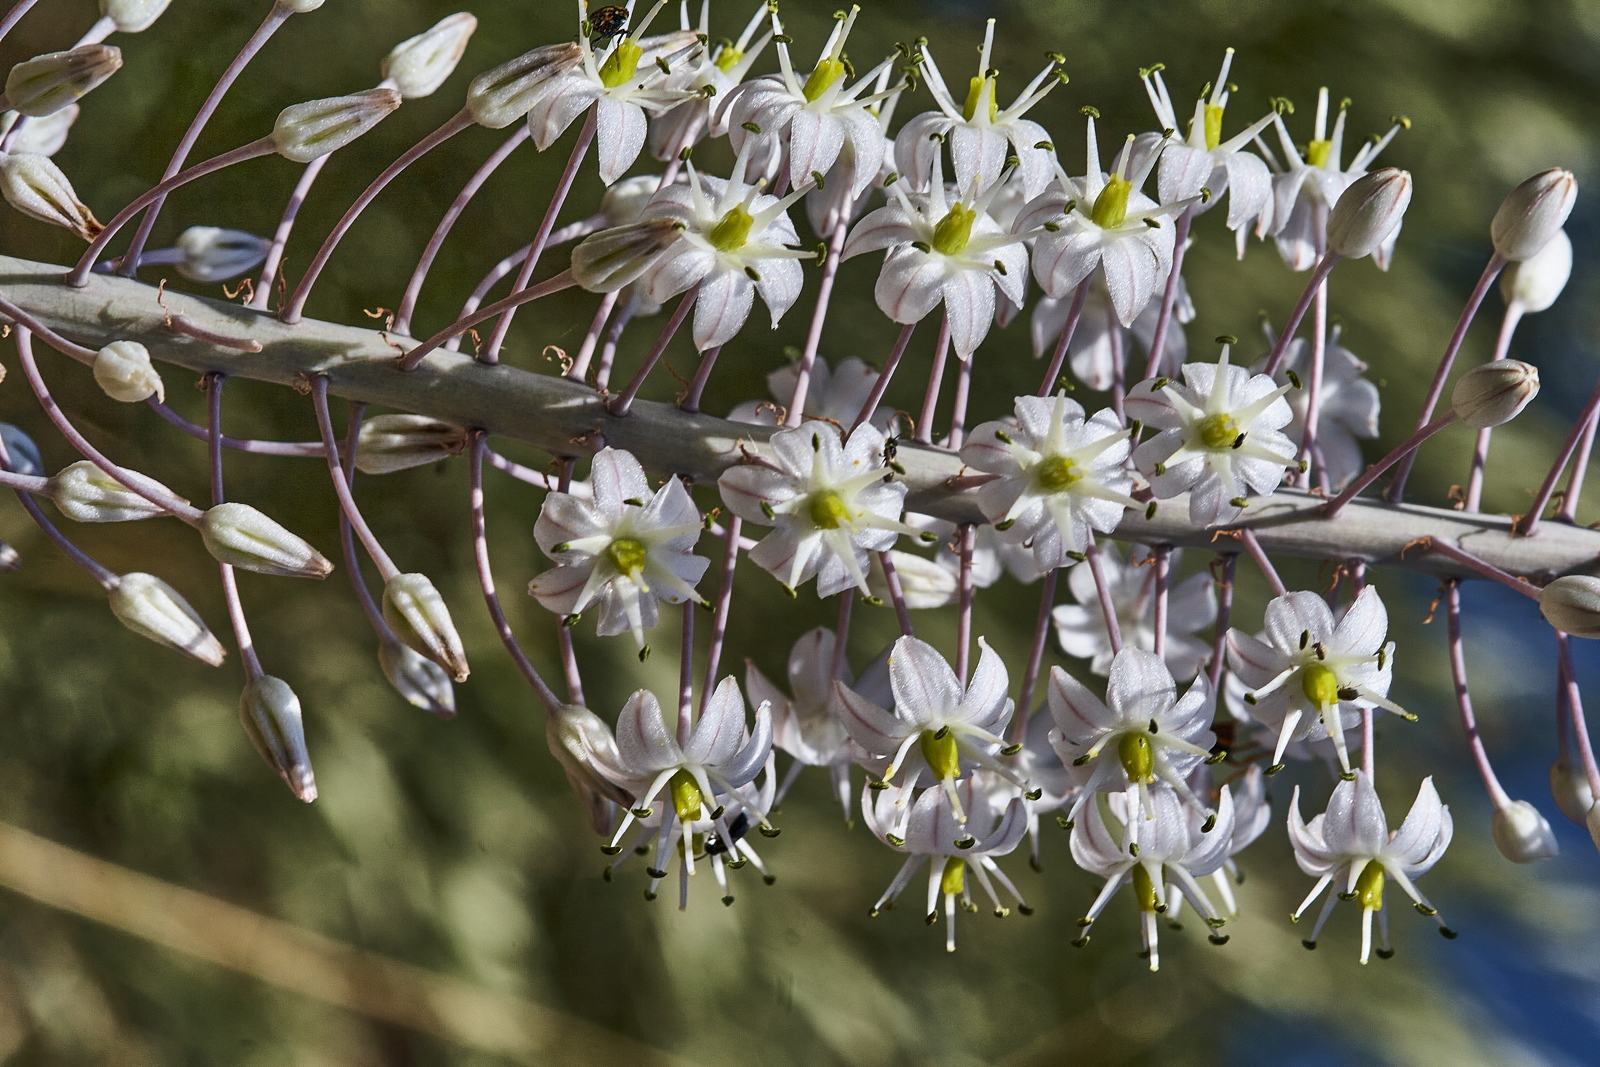 13 – Urginea maritima or Drimia maritima (Liliaceae), Israel